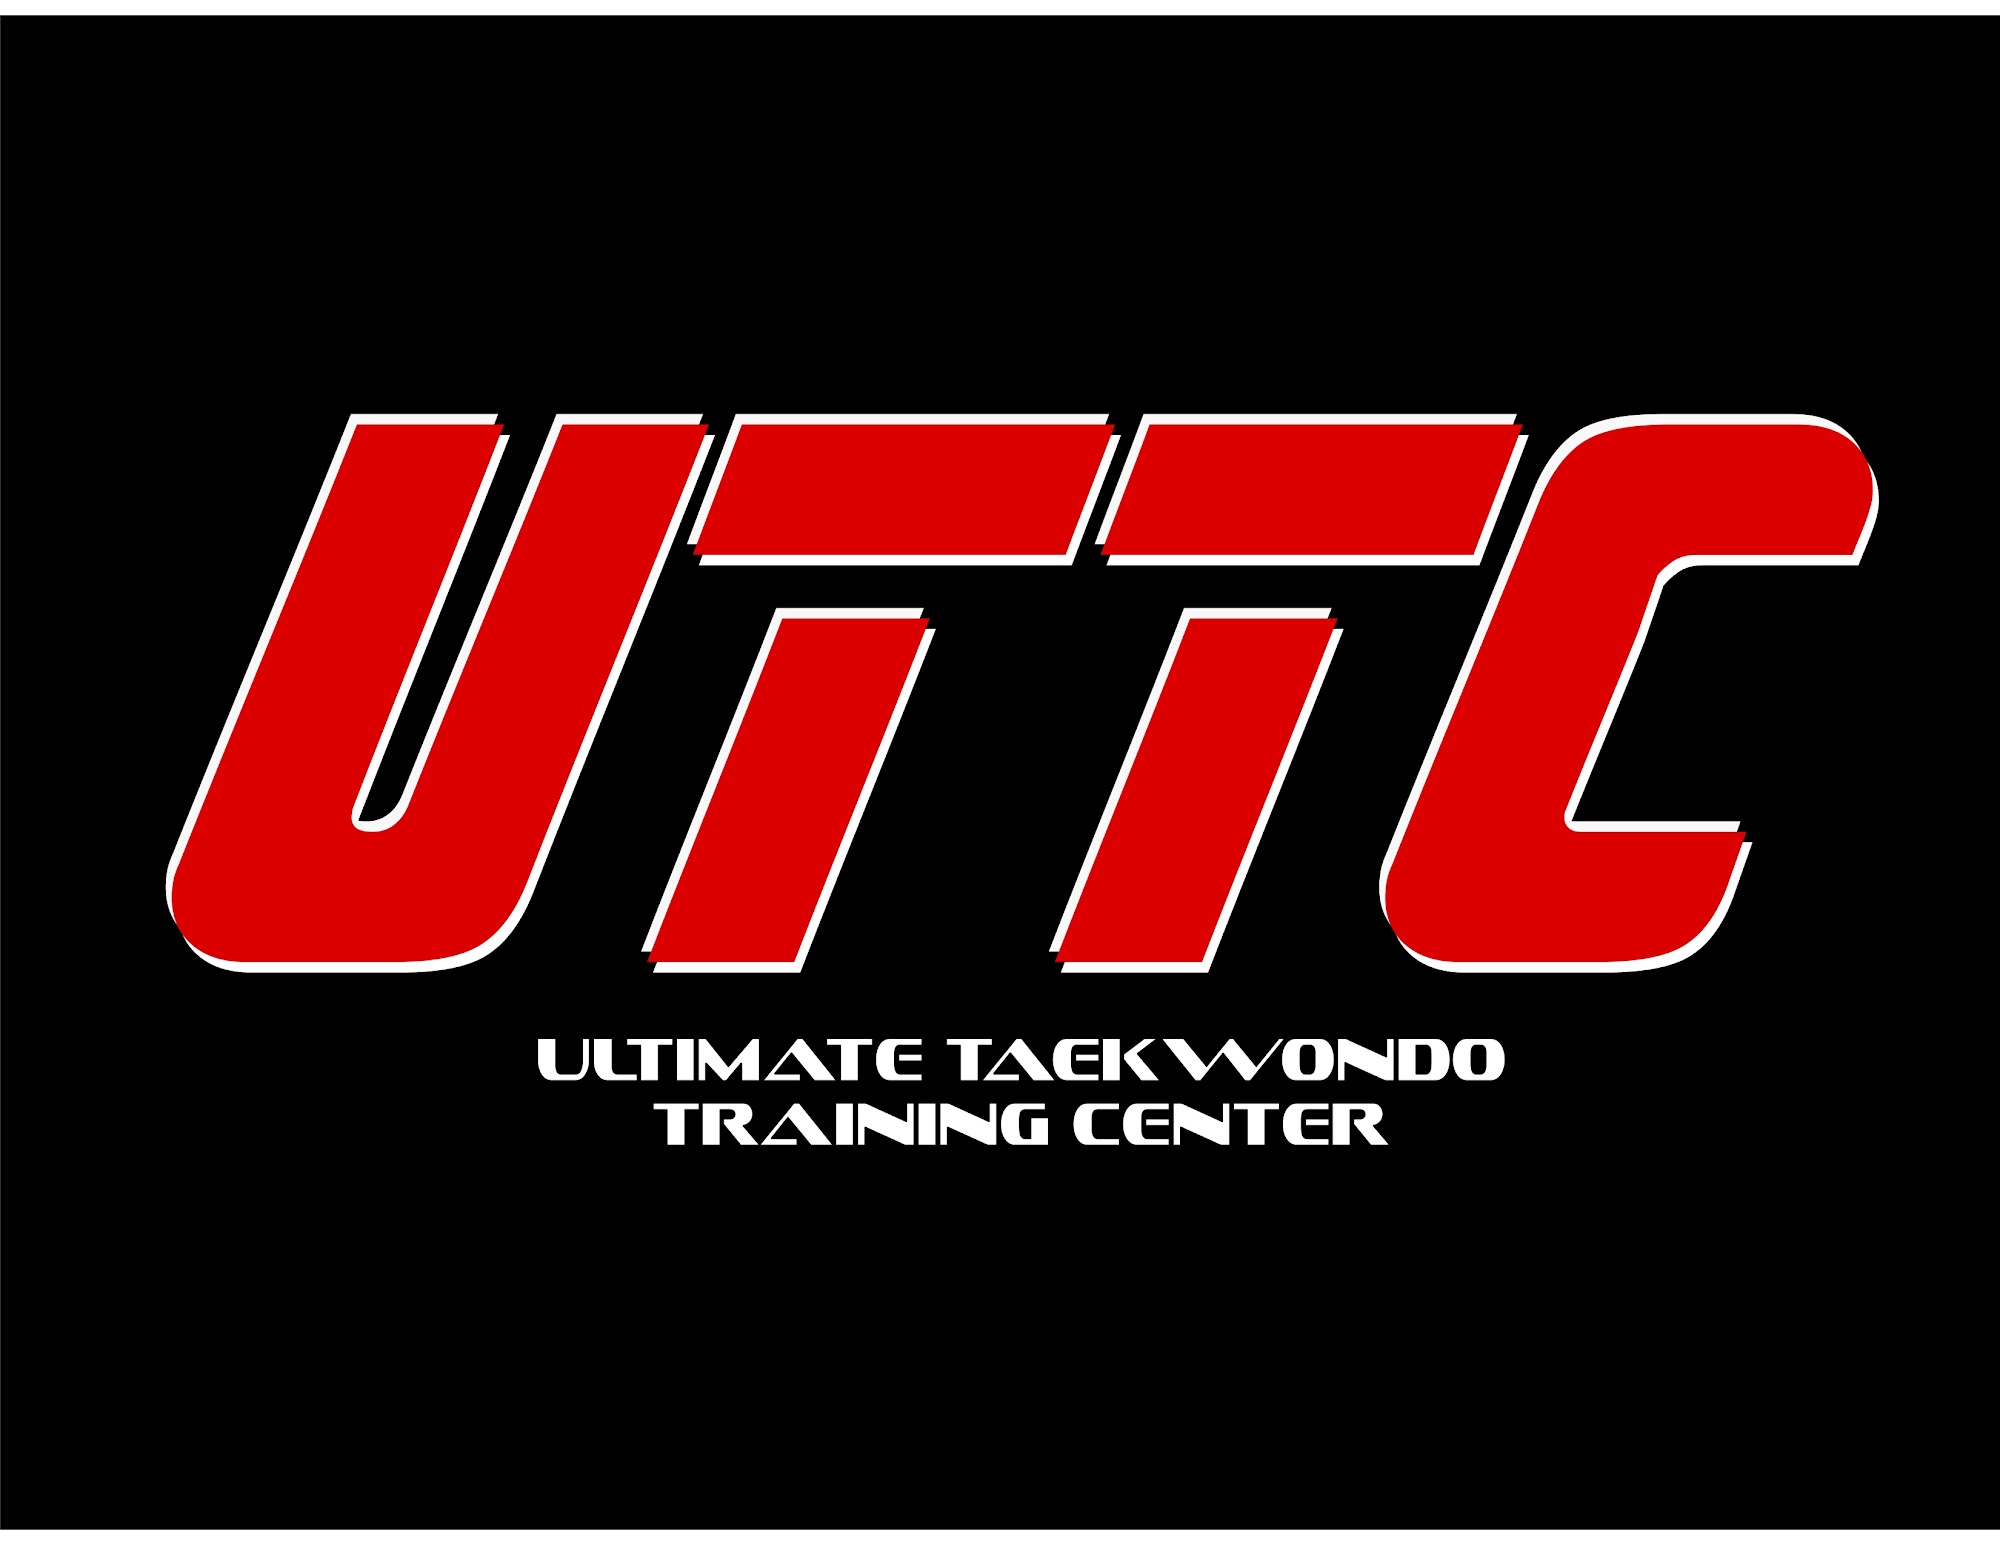 UTTC-Ultimate Taekwondo Training Center 1843 Calumet Ave, Whiting Indiana 46394